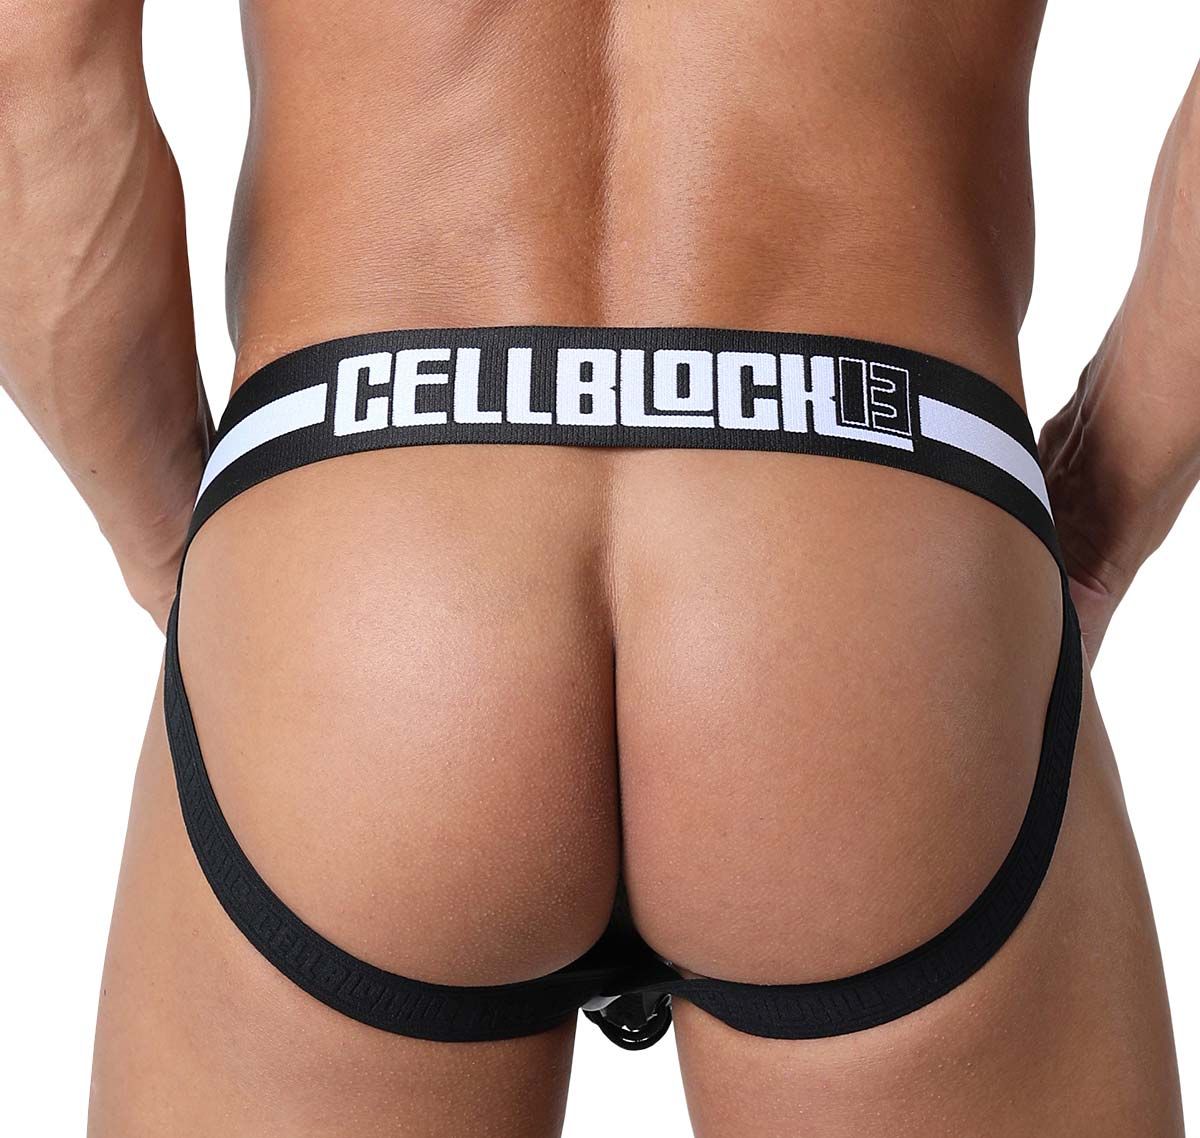 Cellblock 13 Suspensorio KICK-OFF JOCKSTRAP, blanco